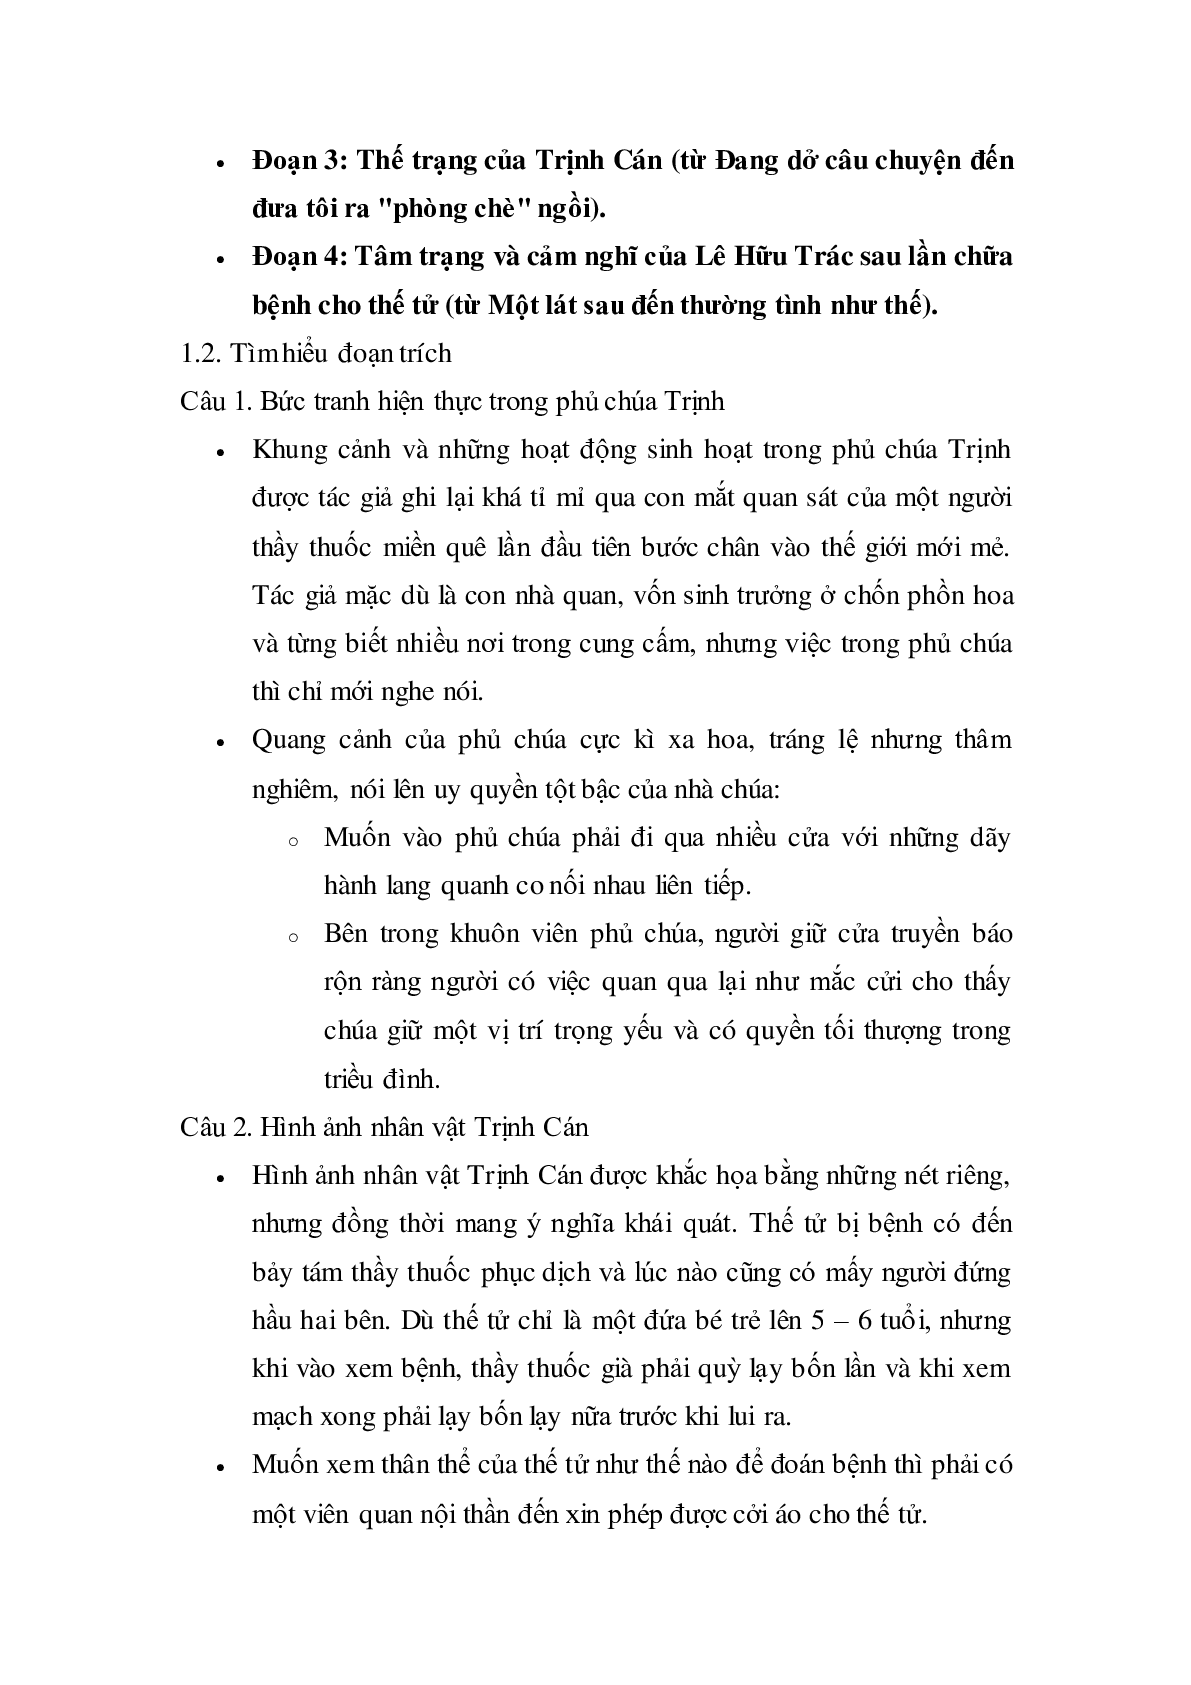 Soạn bài Vào phủ chúa Trịnh của Lê Hữu Trác - ngắn nhất Soạn văn 11 (trang 2)